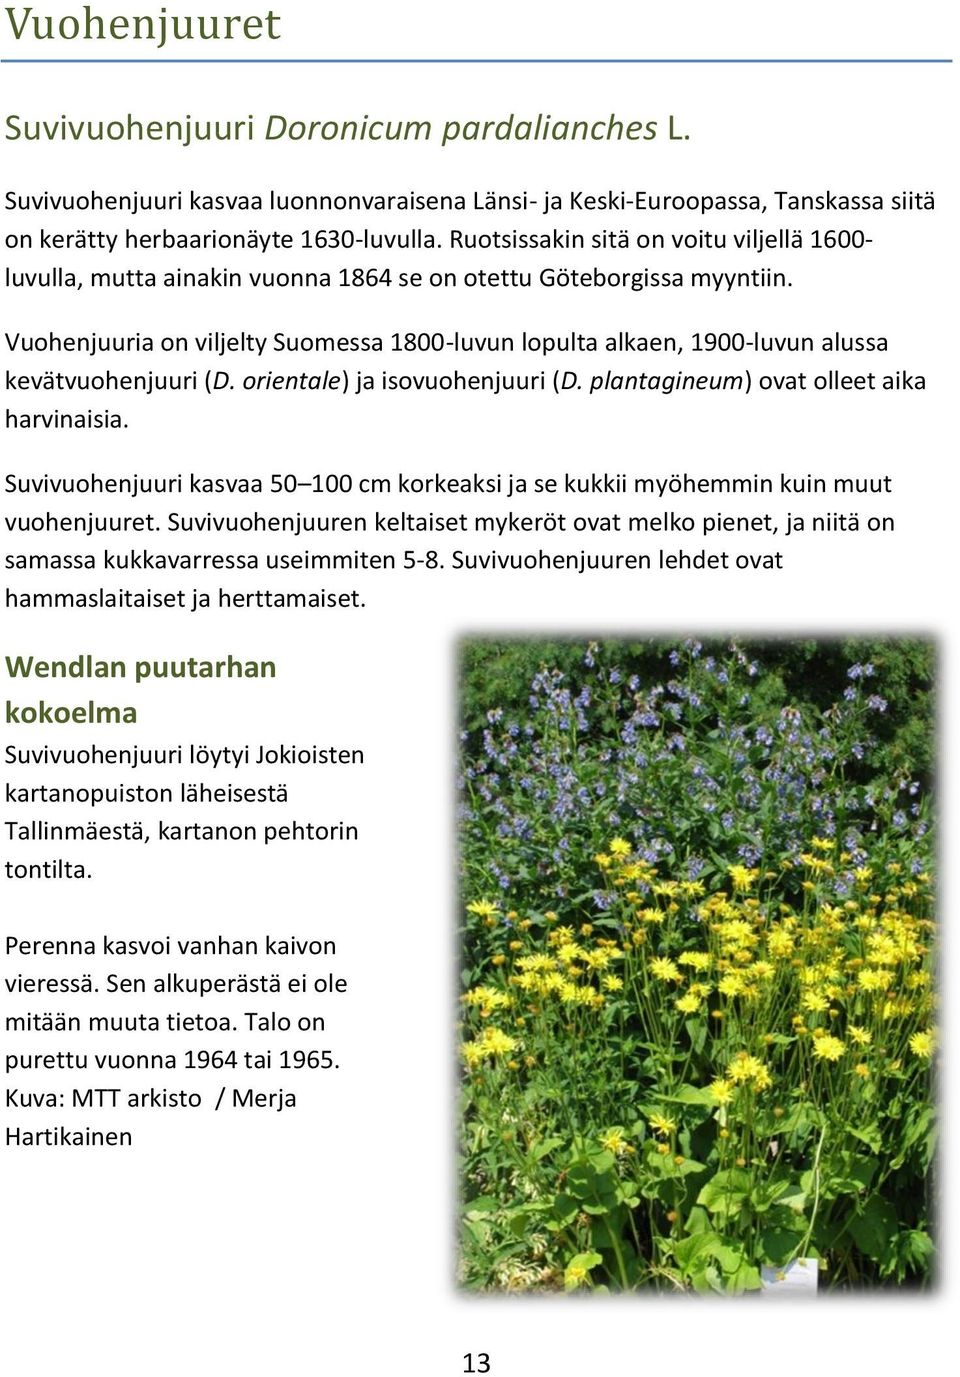 Vuohenjuuria on viljelty Suomessa 1800-luvun lopulta alkaen, 1900-luvun alussa kevätvuohenjuuri (D. orientale) ja isovuohenjuuri (D. plantagineum) ovat olleet aika harvinaisia.